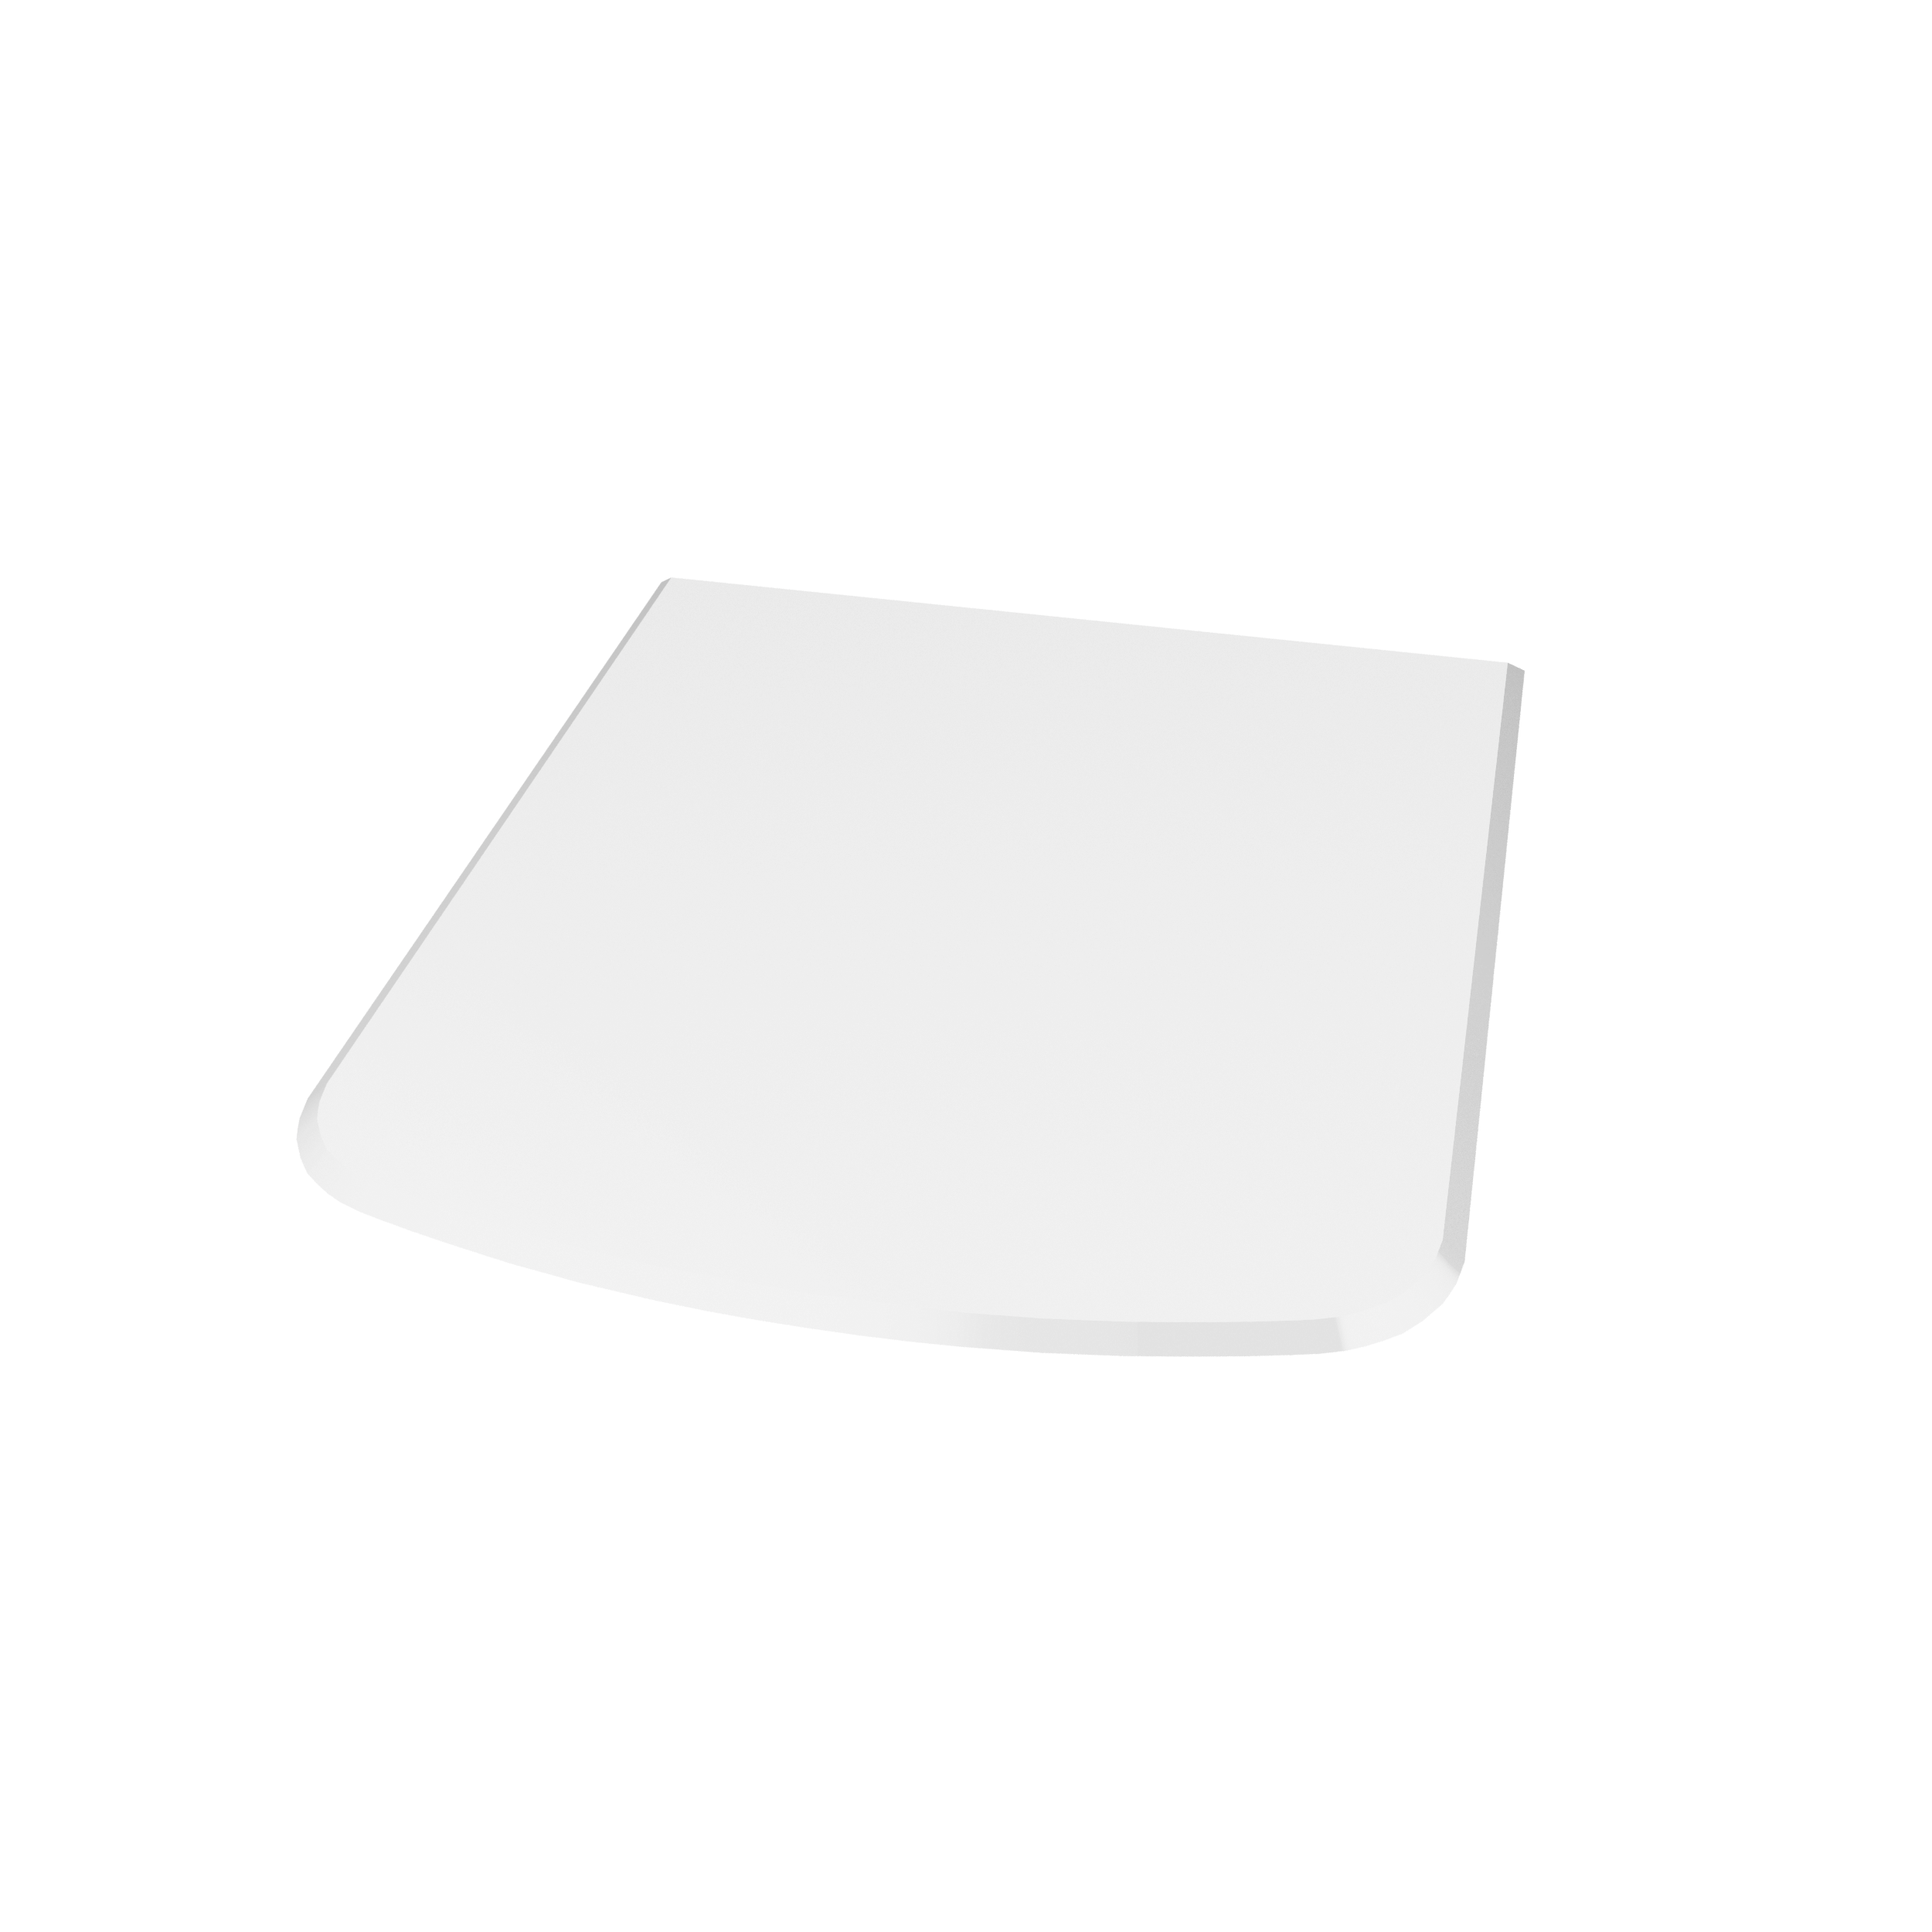 Valo Glasvorlegeplatte Segmentbogen 110 x 120 cm; glasklar; 8 mm; mit geschliffenen Kanten